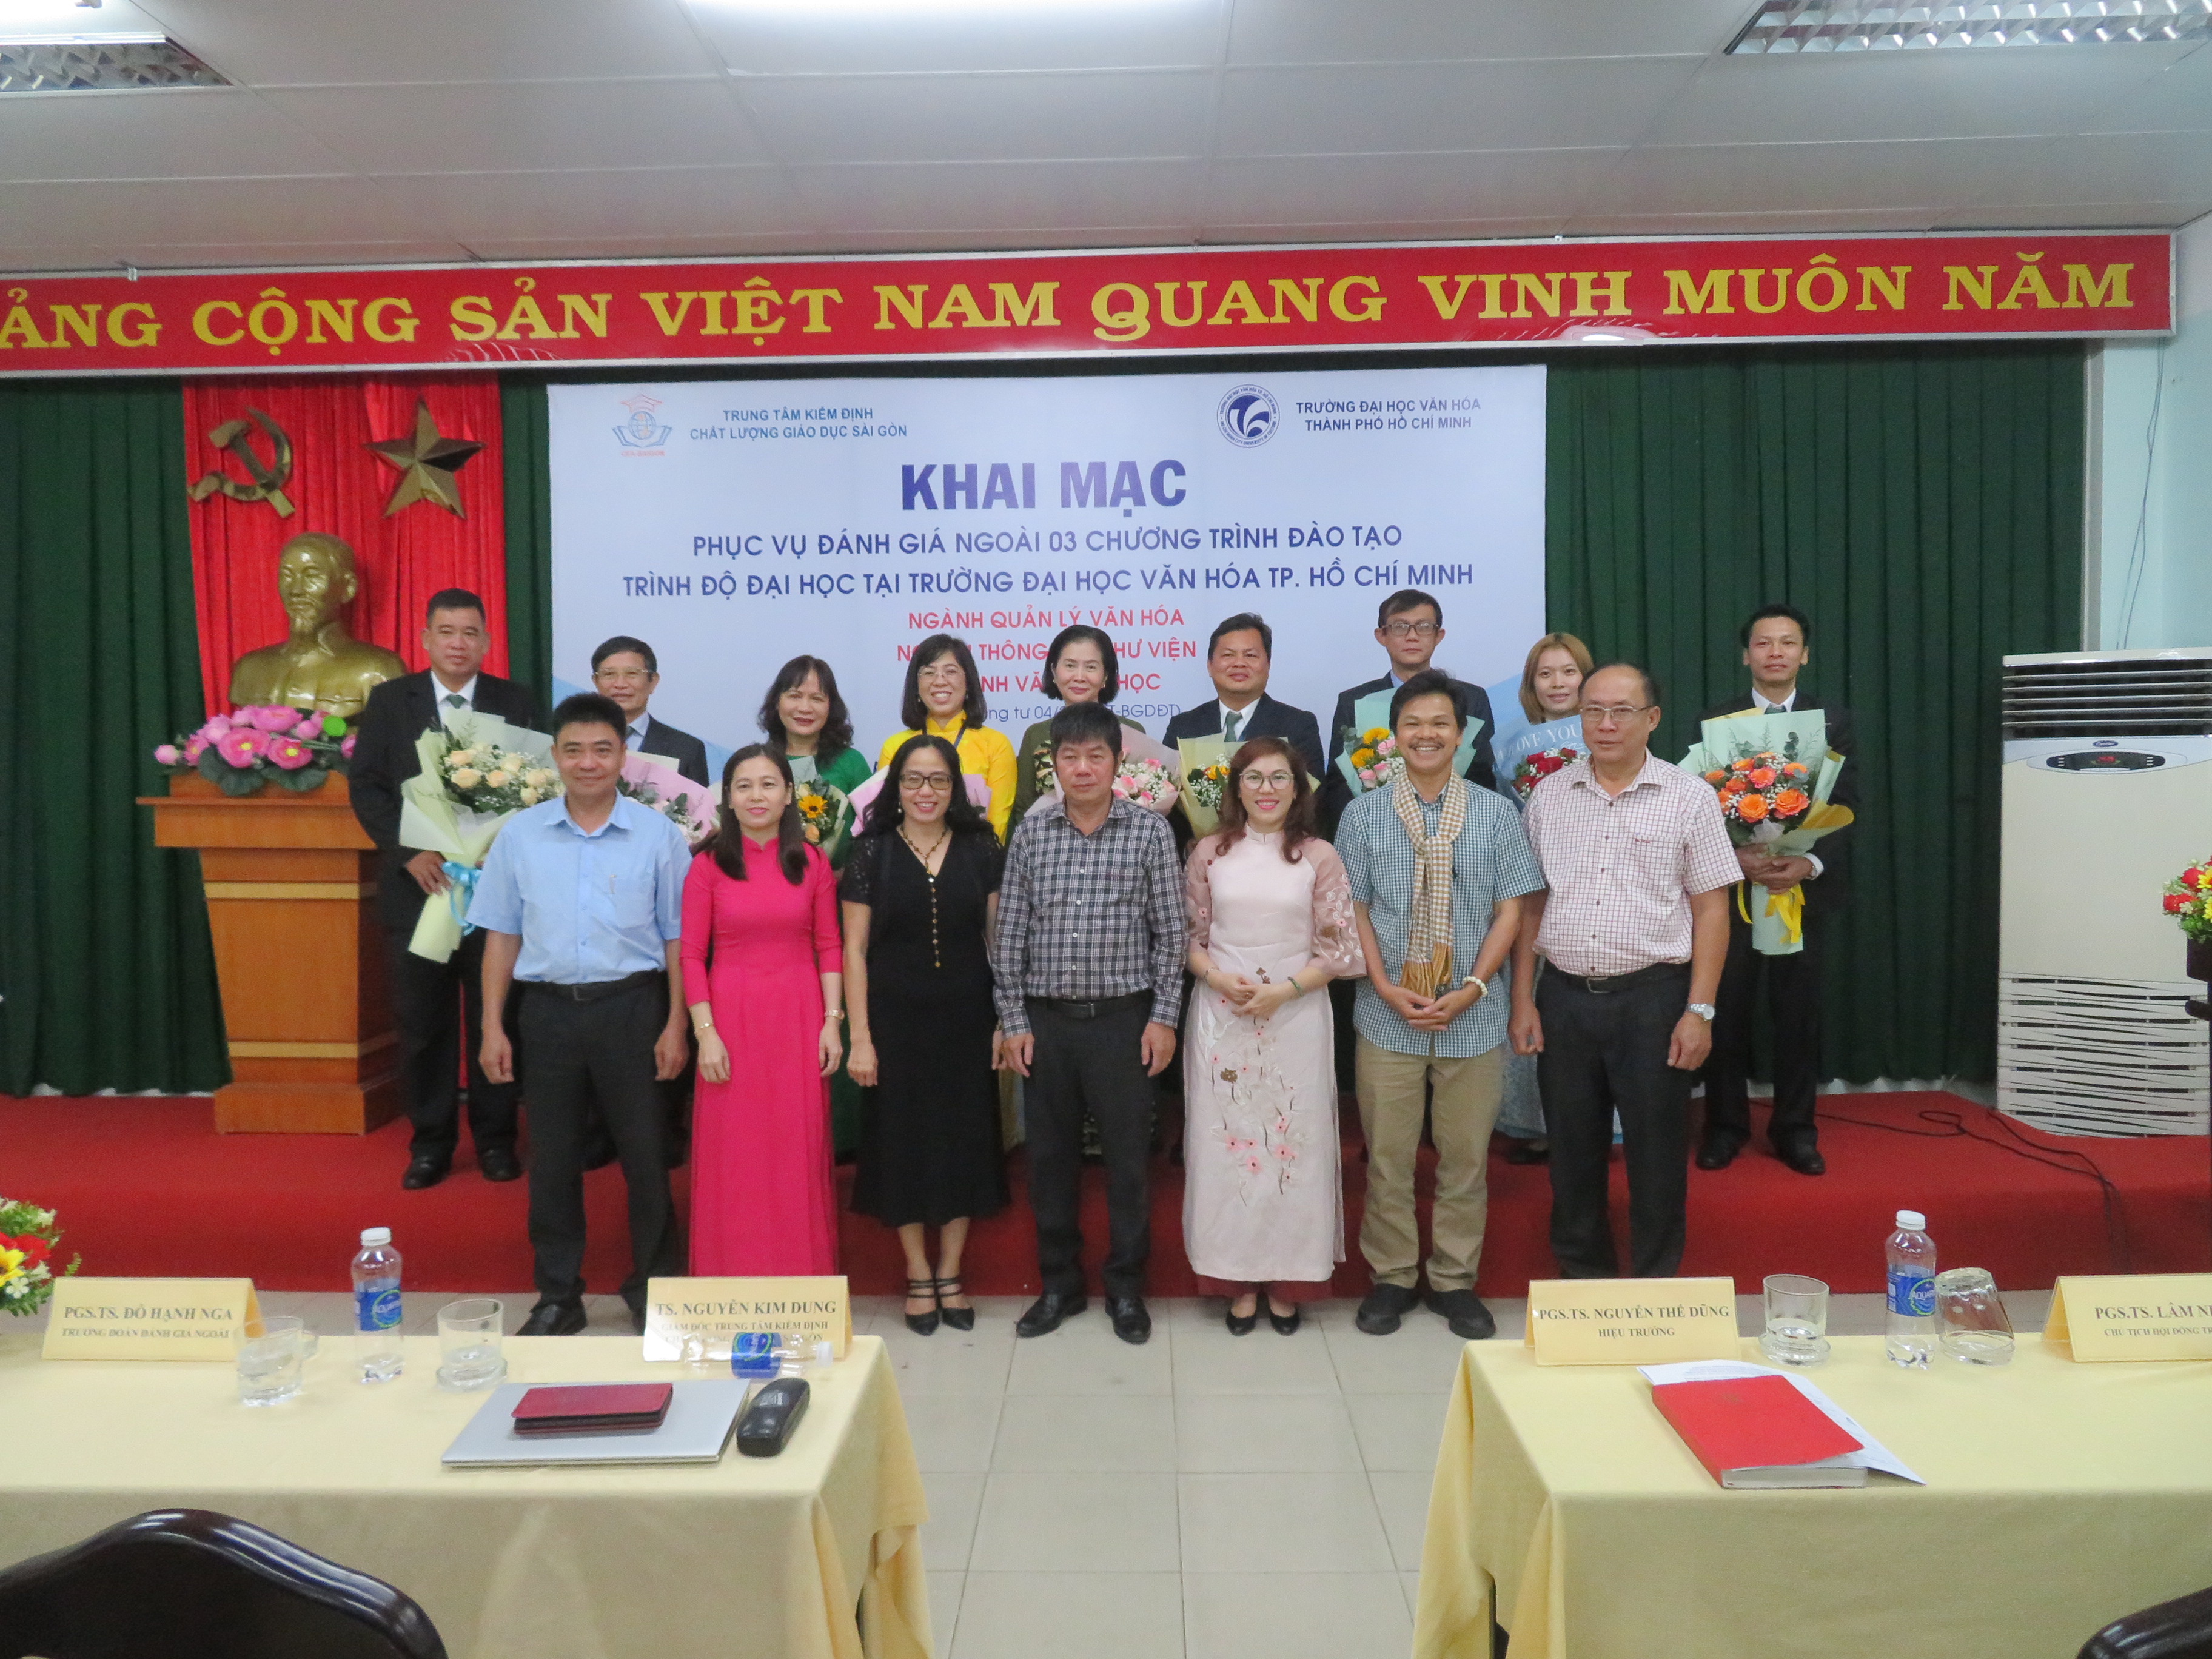 Khai mạc Khảo sát chính thức đánh giá chất lượng  03 chương trình đào tạo của Trường Đại học Văn hóa Thành phố Hồ Chí Minh